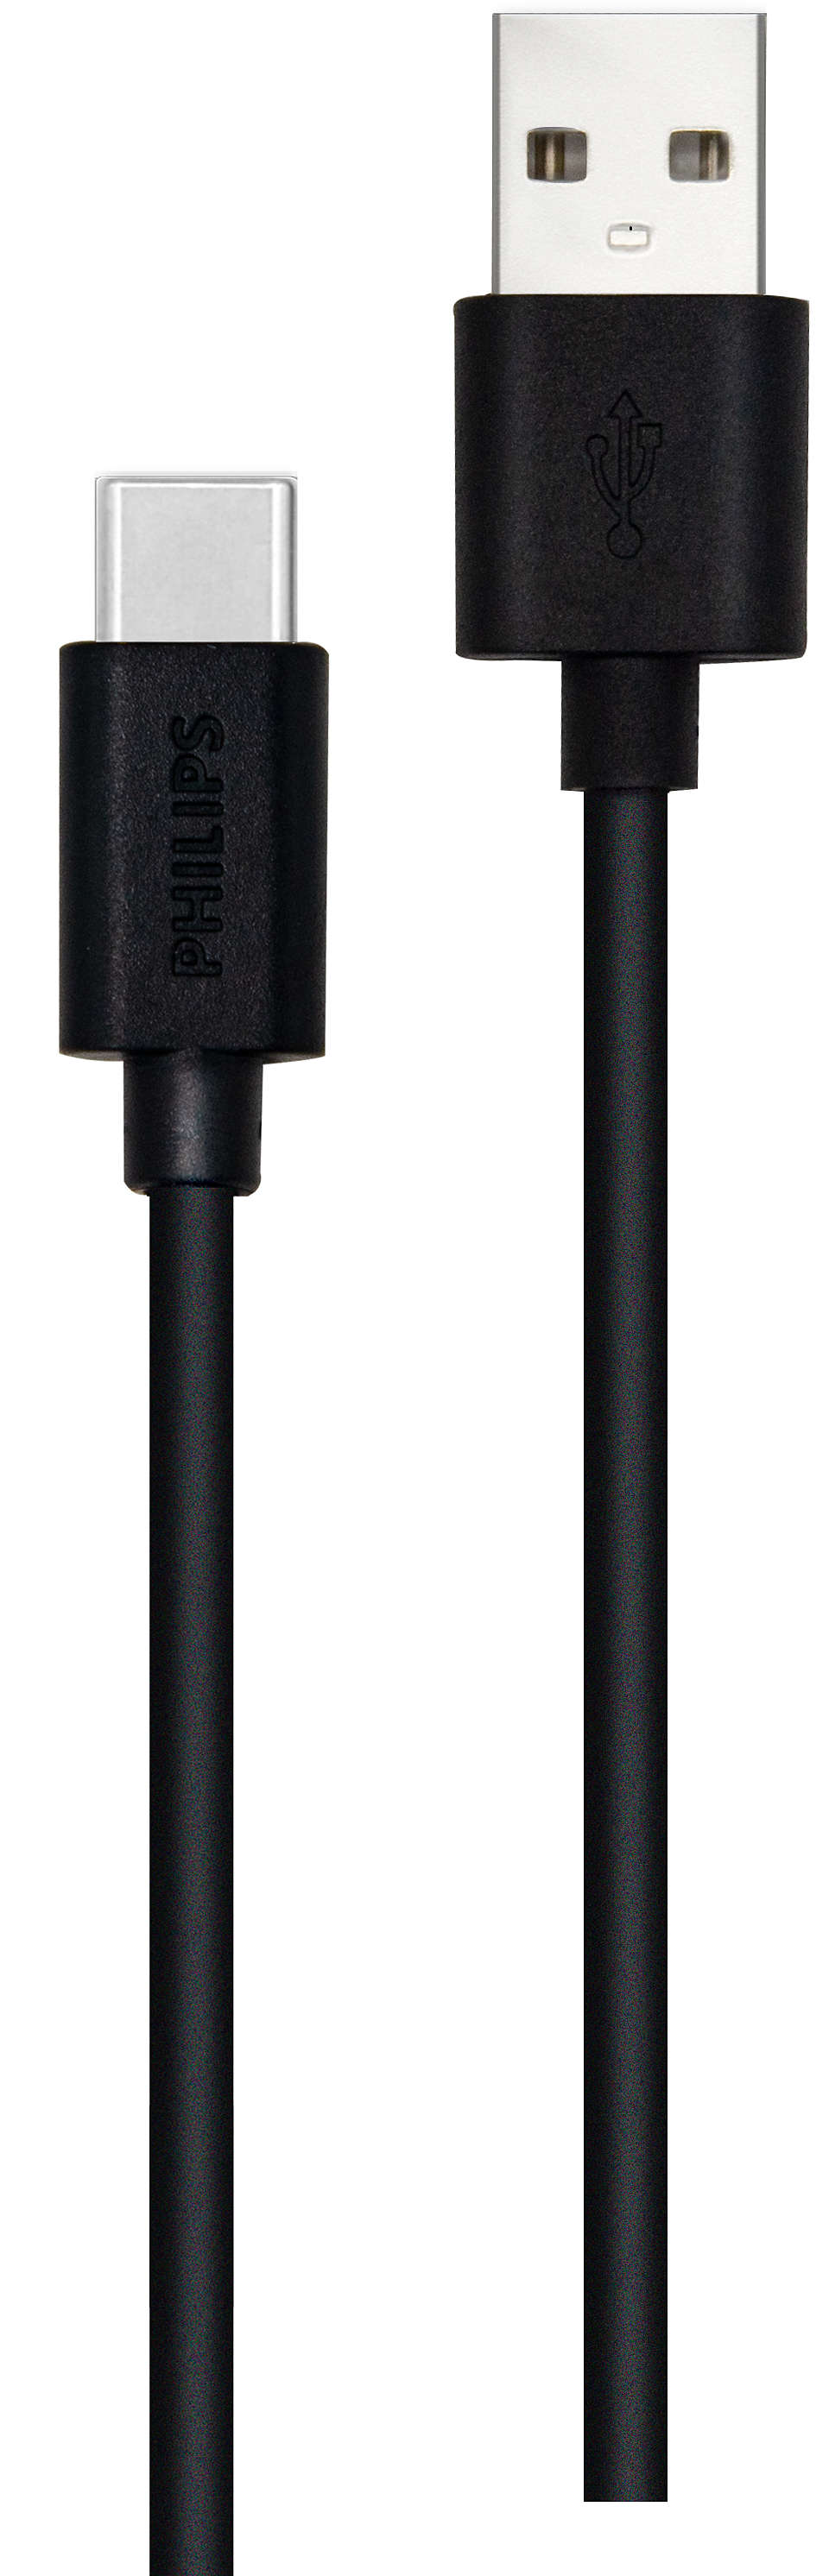 2 米 USB-A 轉 USB-C 電線